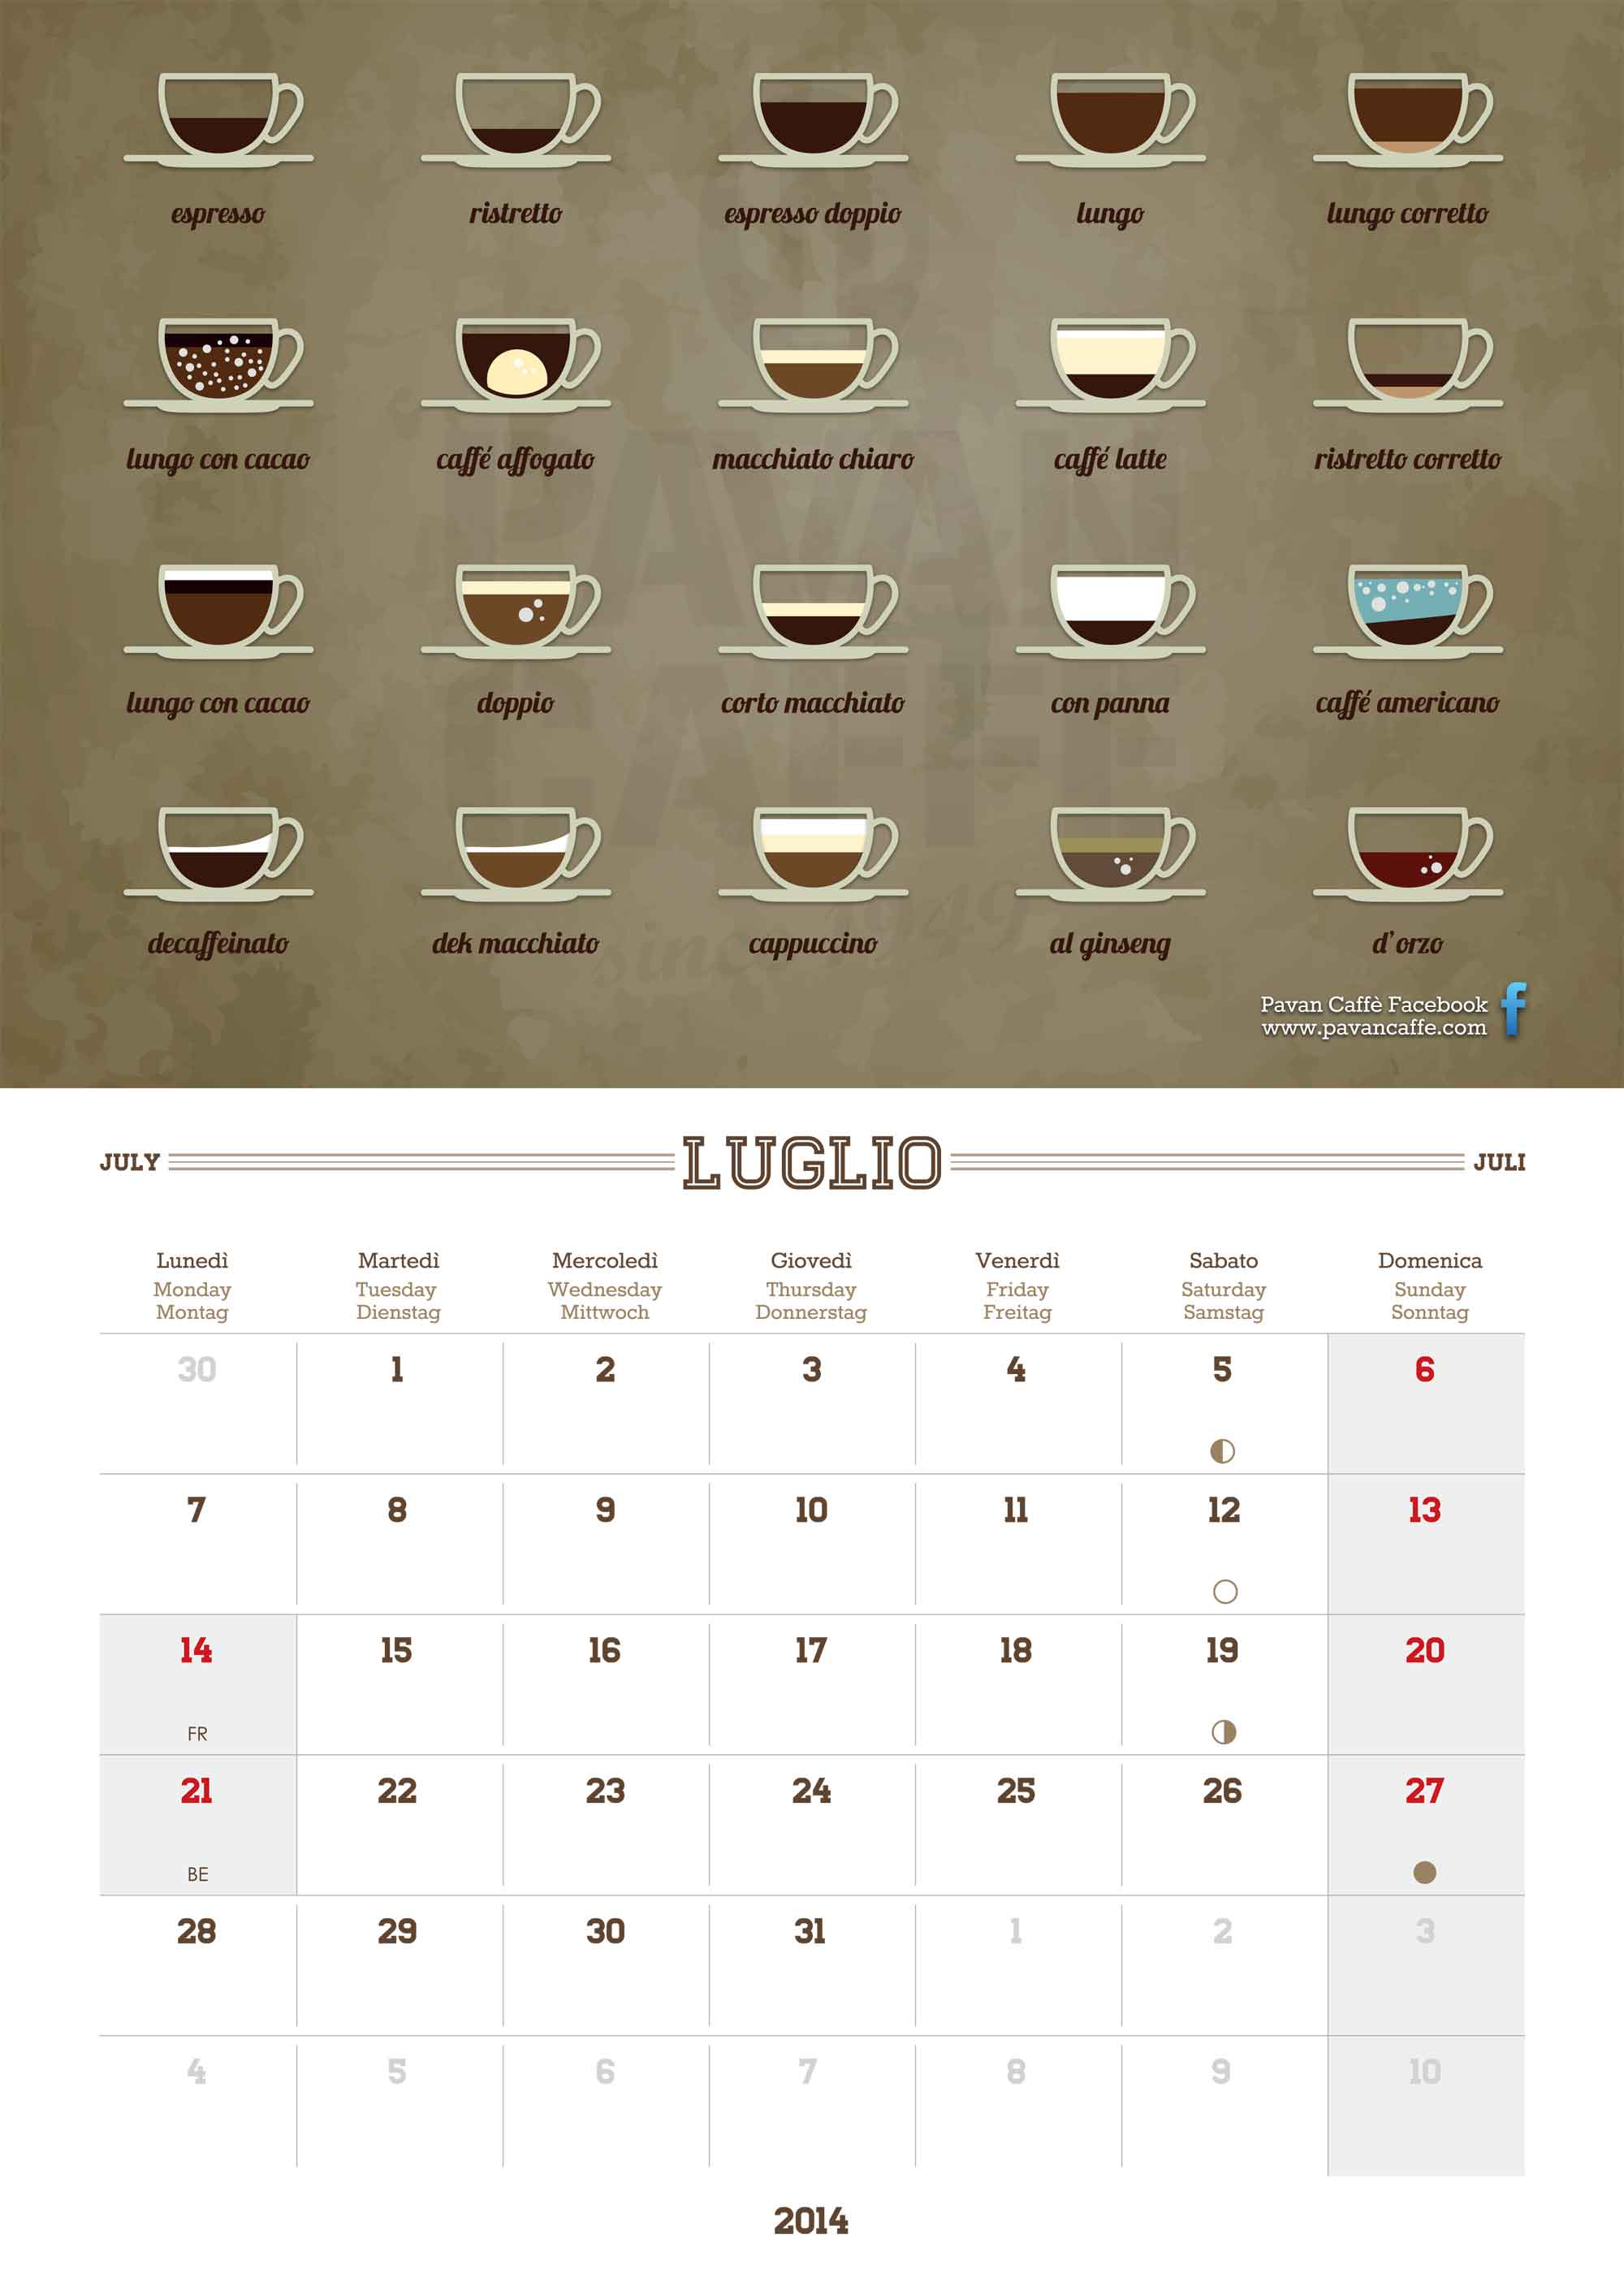 Pavan Caffè 2014 calendar July